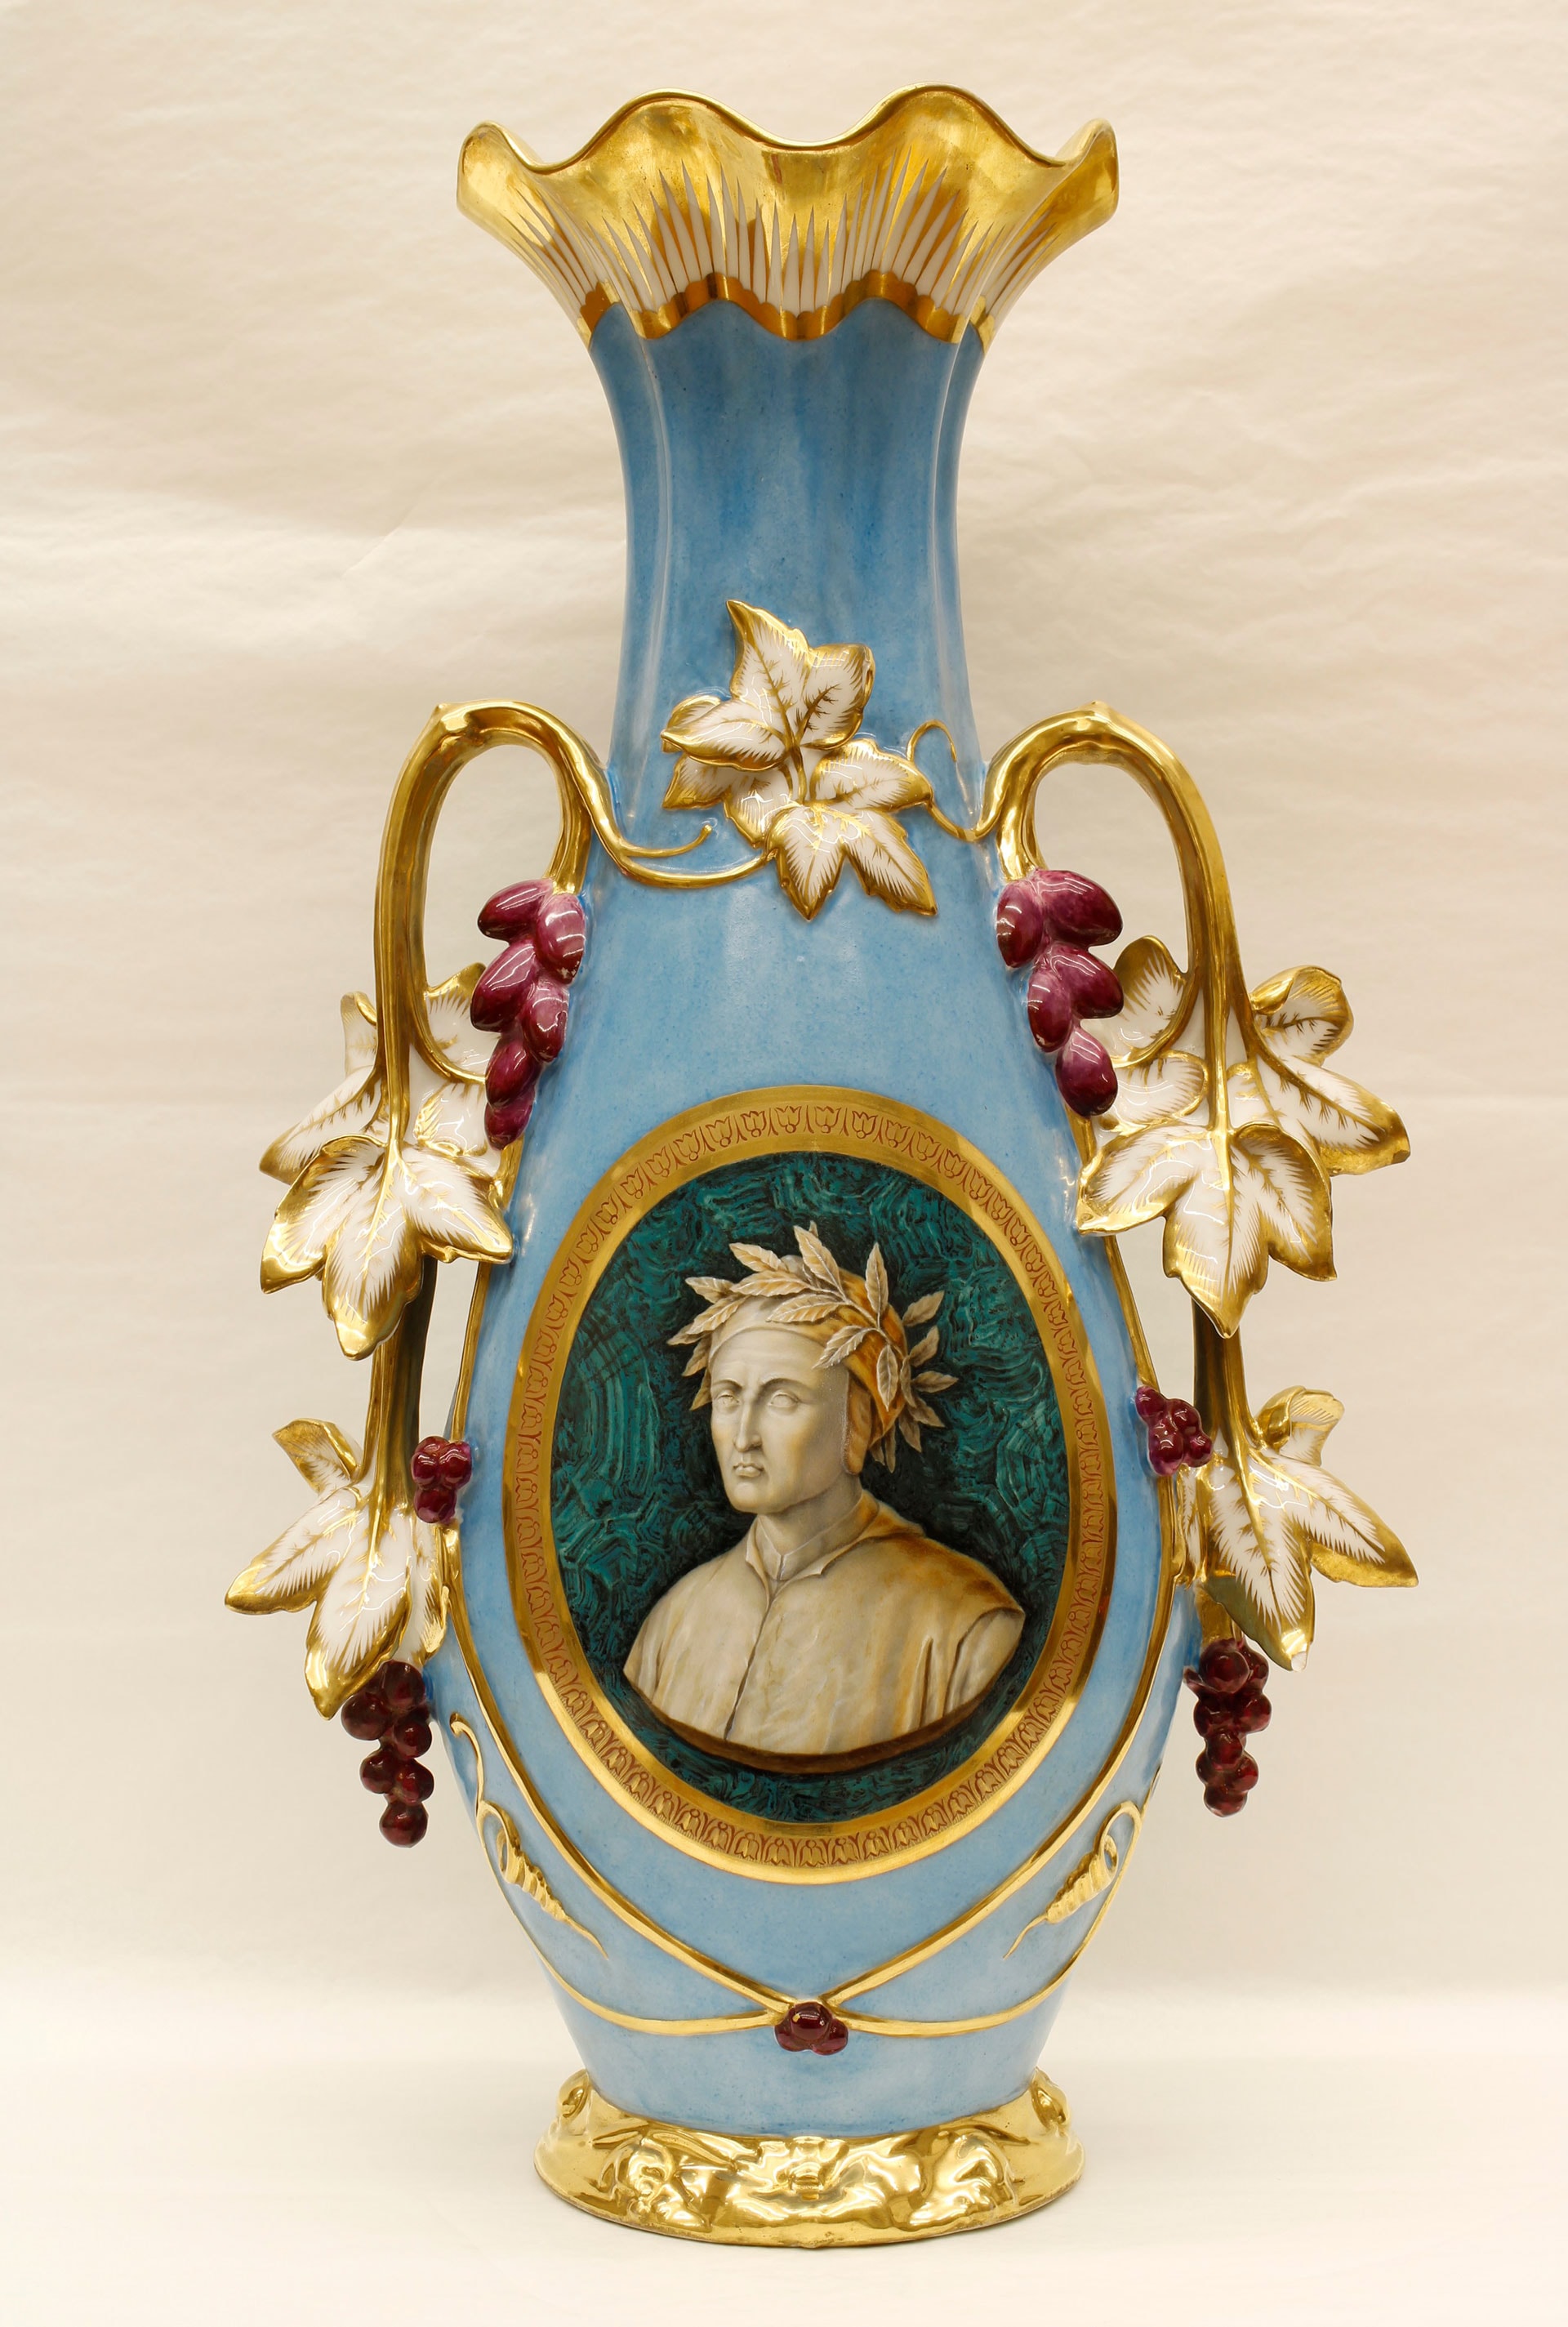 Manifattura francese, seconda metà del XIX secolo. Vaso di porcellana con ritratto di Dante Alighieri. Palazzo Reale di Napoli